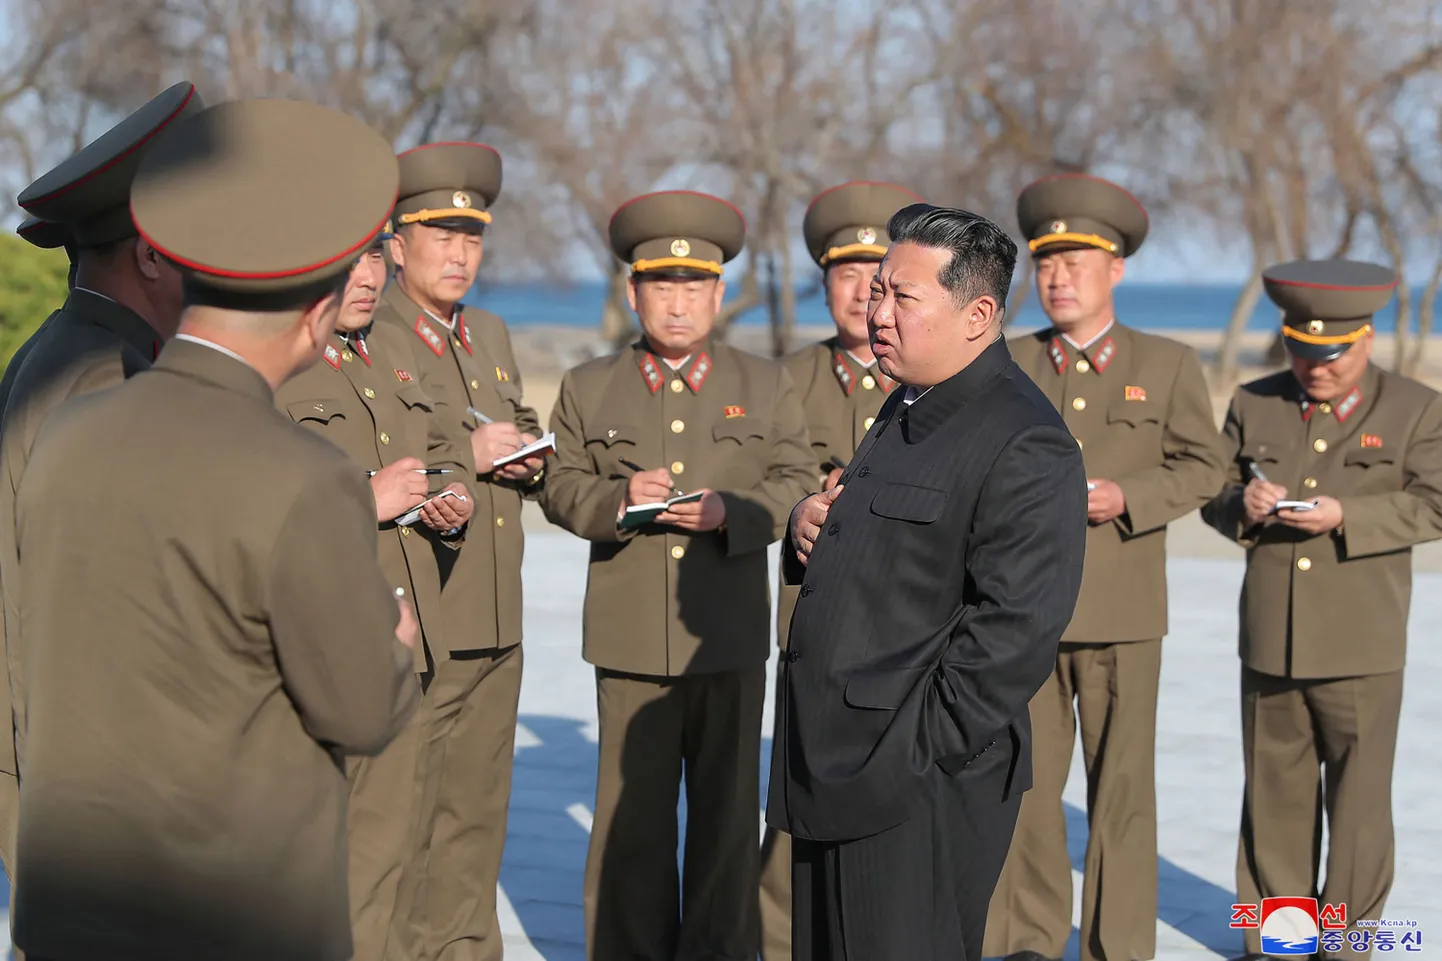 Põhja-Korea liider Kim Jong-un oma sõjaväeladvikuga.